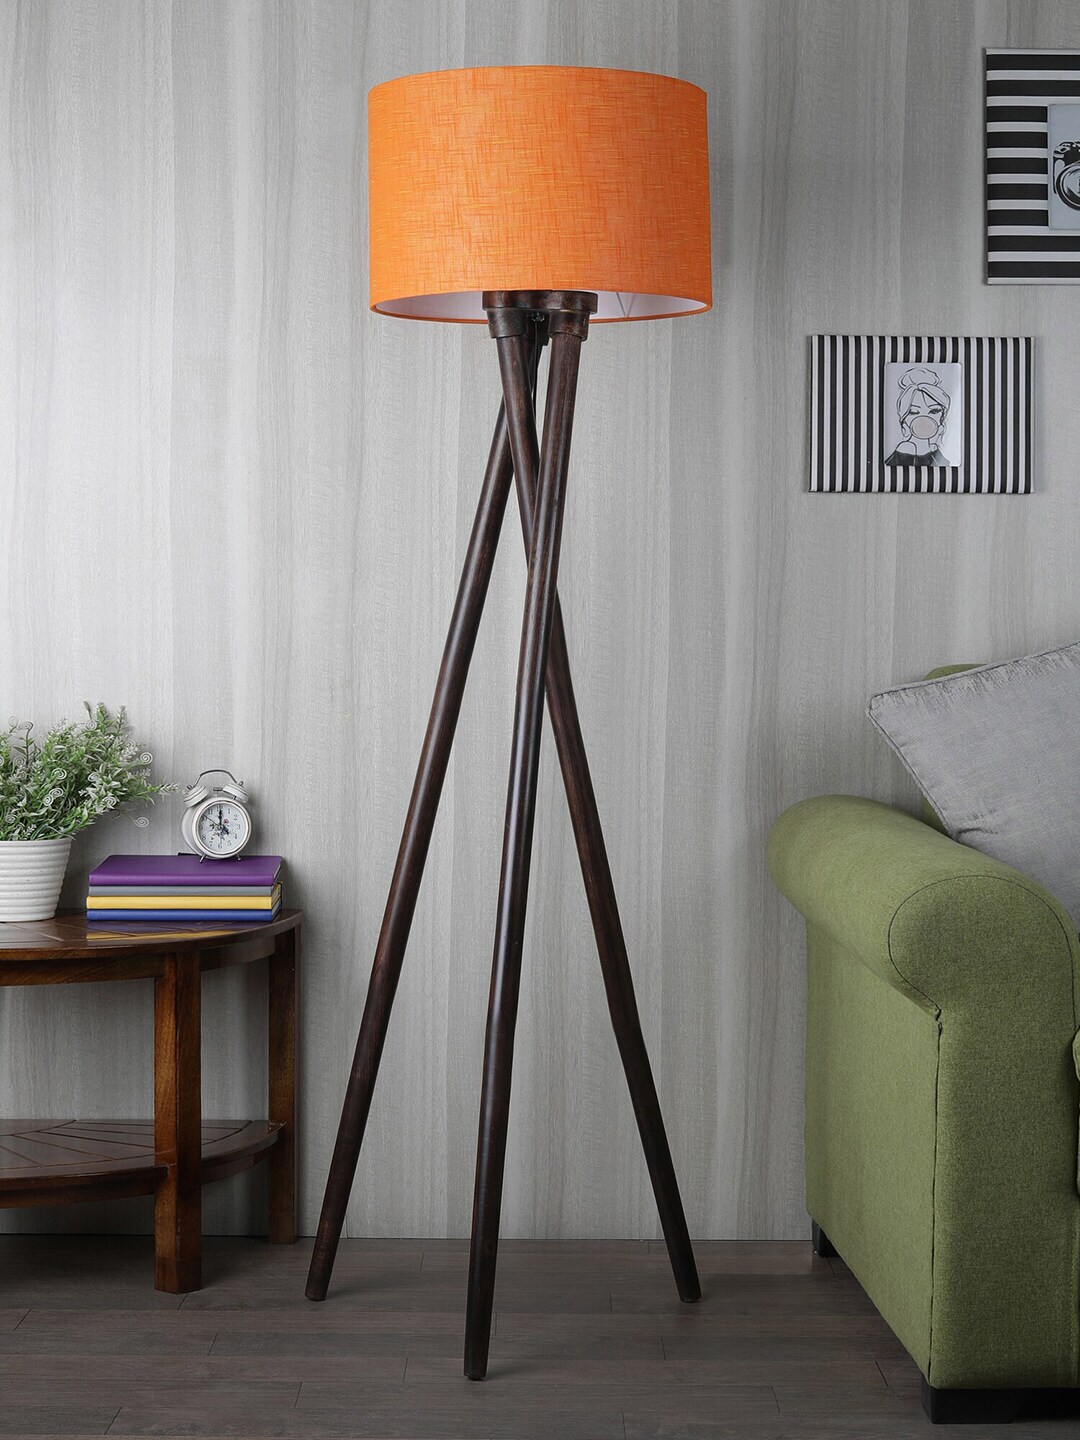 SANDED EDGE Orange Frustum Shade Tripod Floor Lamp Price in India